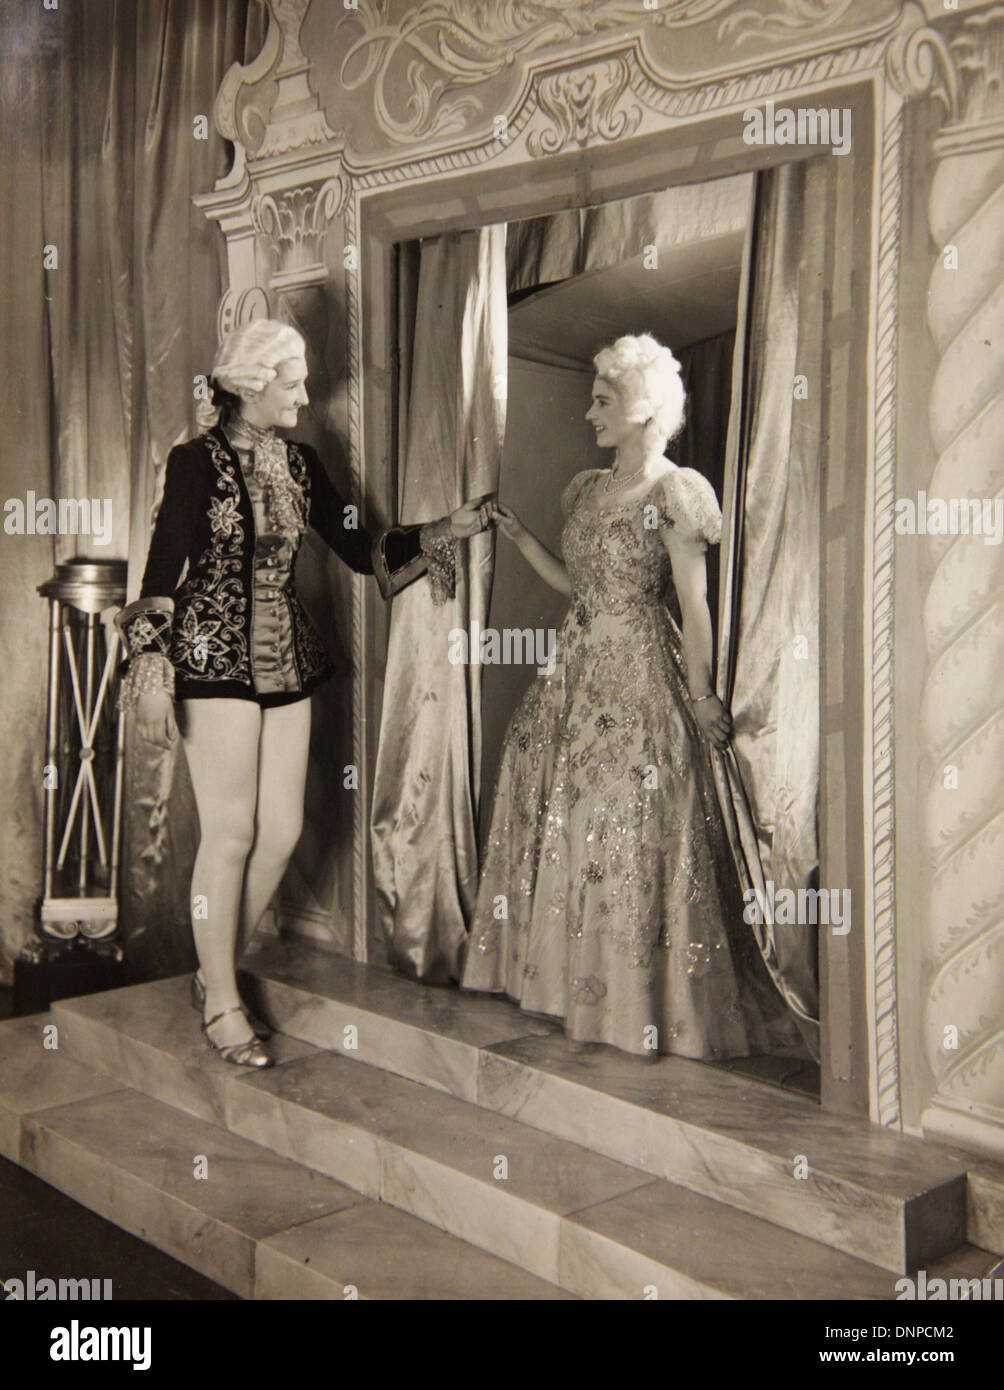 Recueillir des photographie de la princesse Margaret (à droite) dans la pièce de vieille mère Red Riding Boots, 1944 Banque D'Images